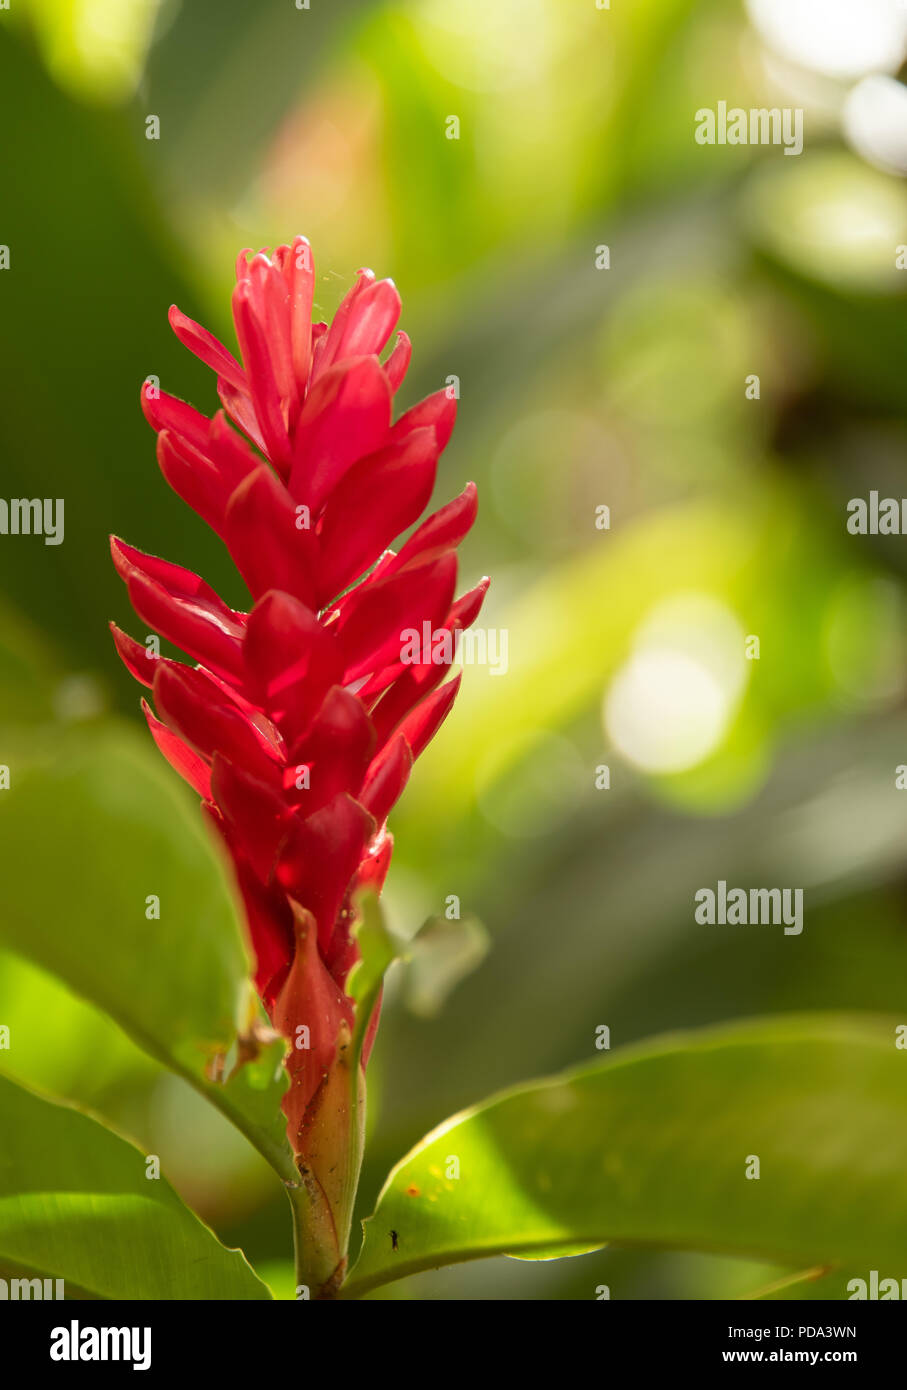 Red Ginger Flower In Garden Stock Photo